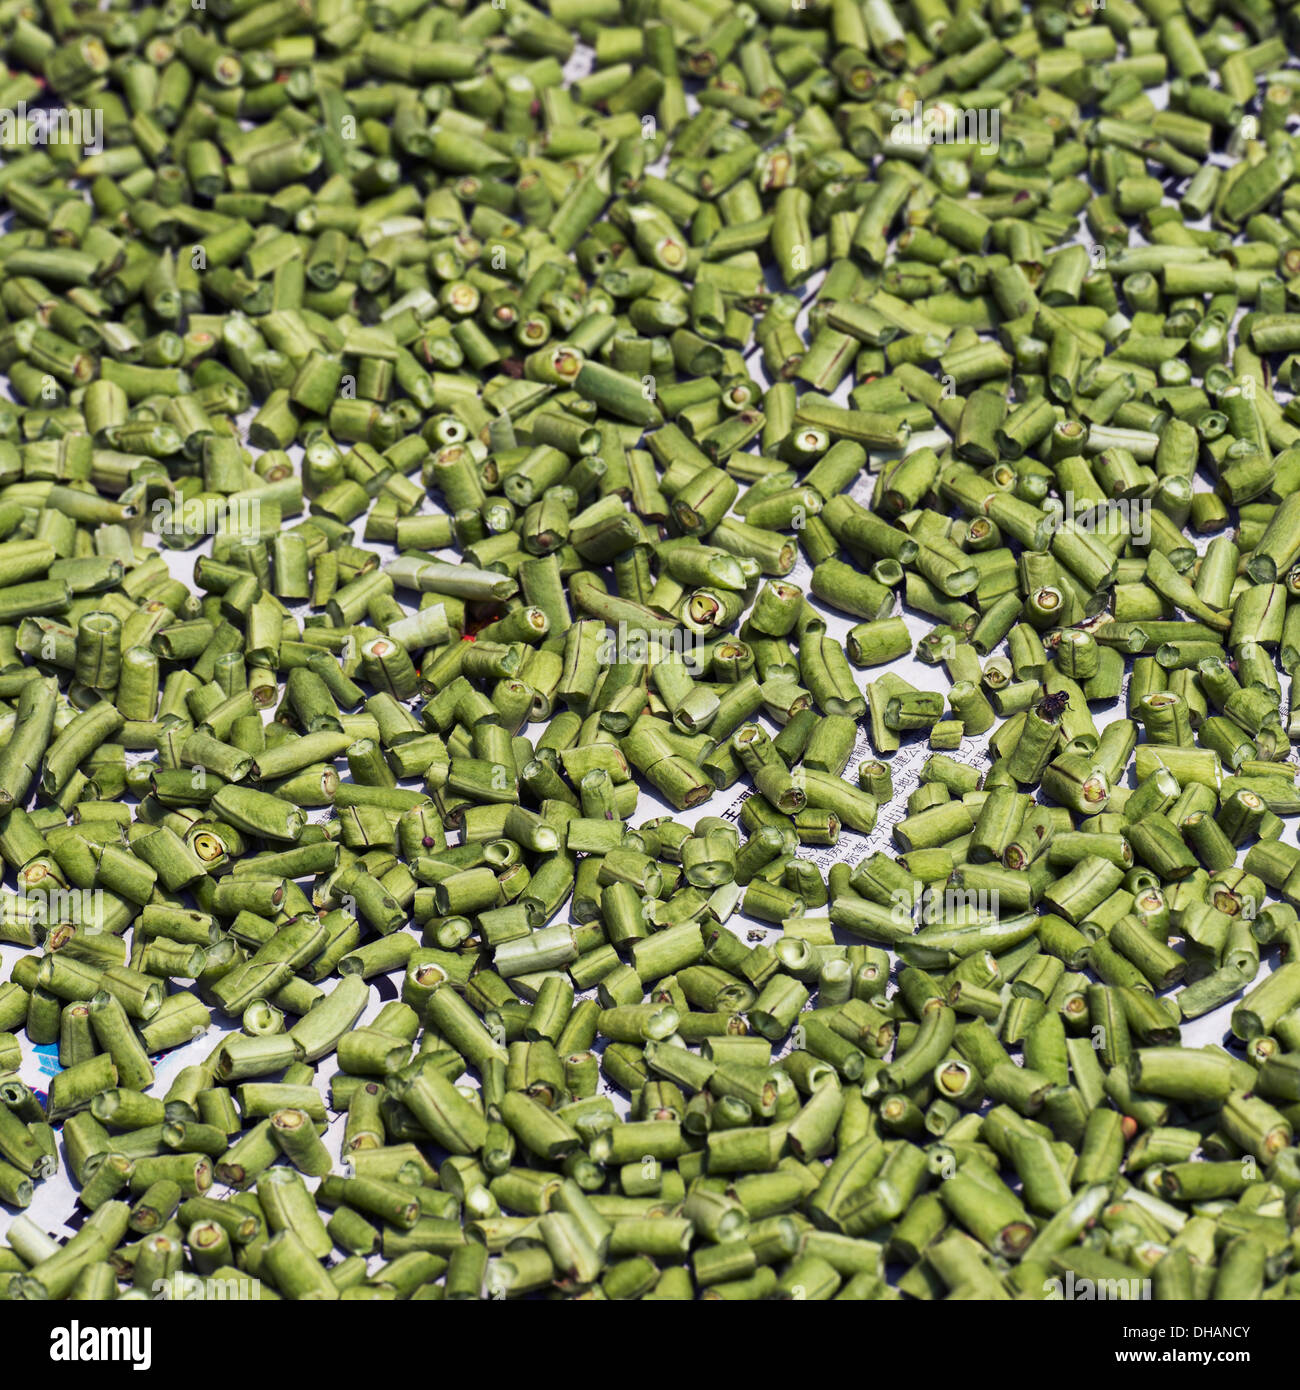 An Abundance Of Cut Green Beans Stock Photo